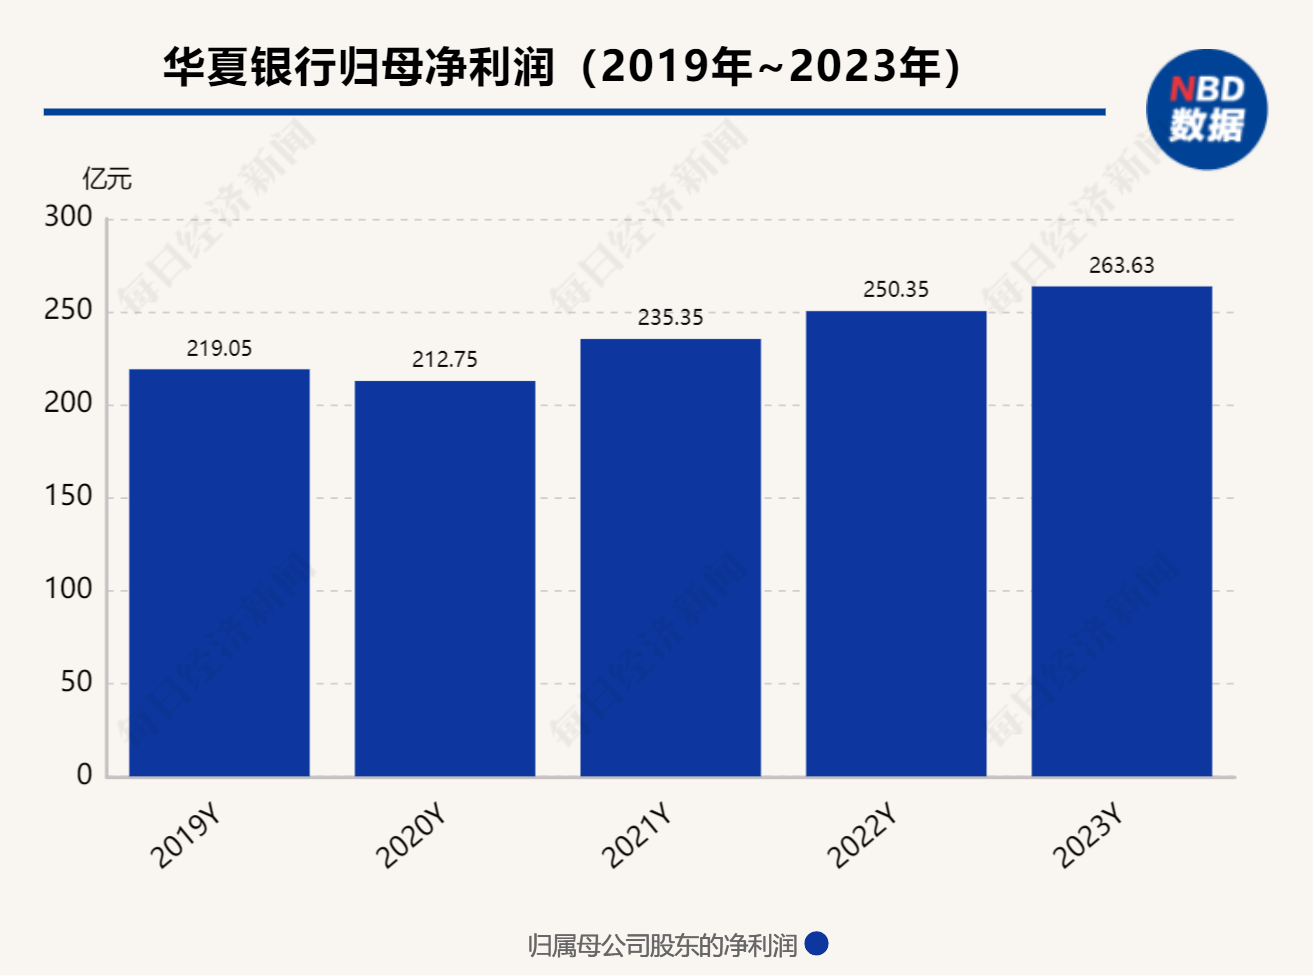 华夏银行去年实现净利润263.63亿元 同比增长5.3% 